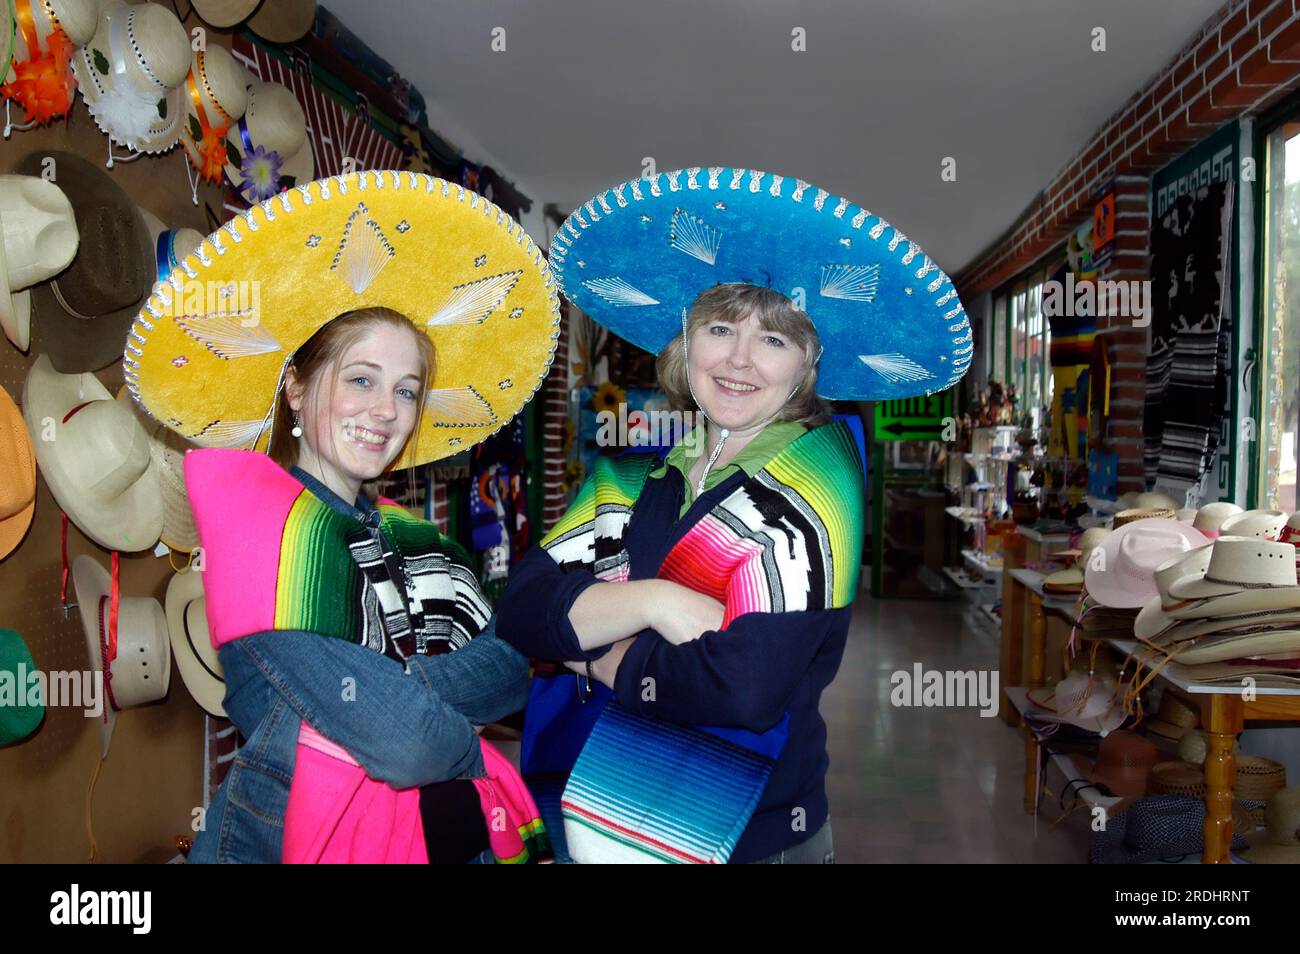 Mère et fille modèle mexicain sombreros et couvertures colorées. Mère porte un chapeau bleu vif et sa fille porte un jaune. Les deux touris Banque D'Images